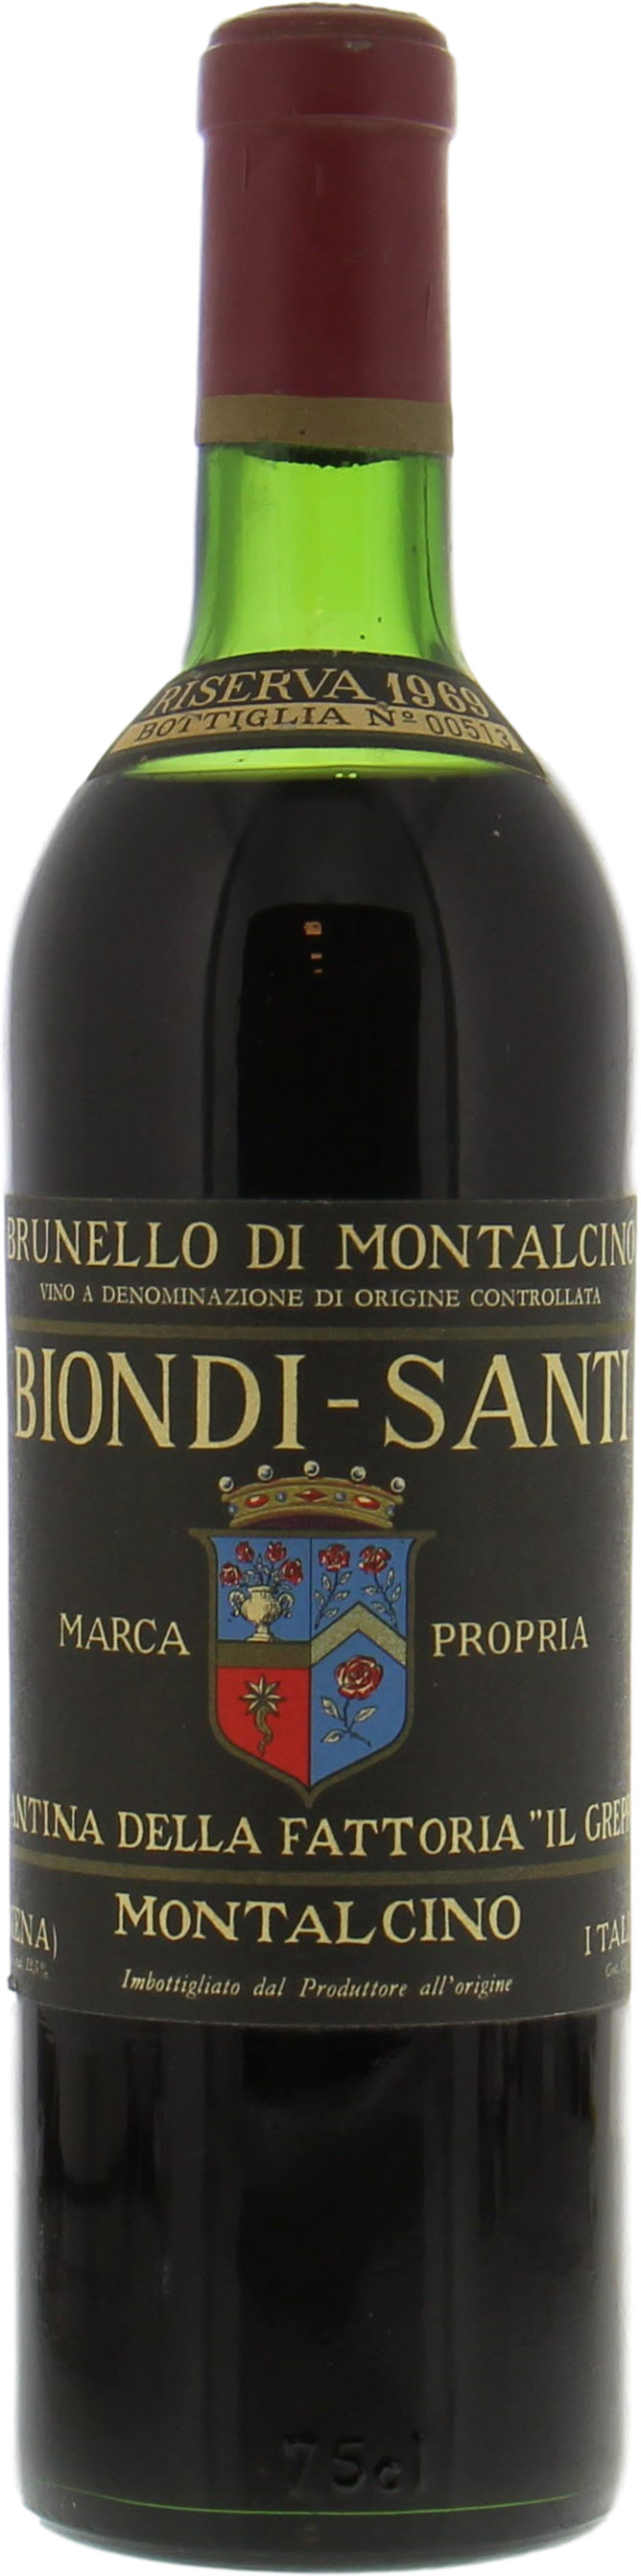 Biondi Santi - Brunello Riserva Greppo 1969 High shoulder